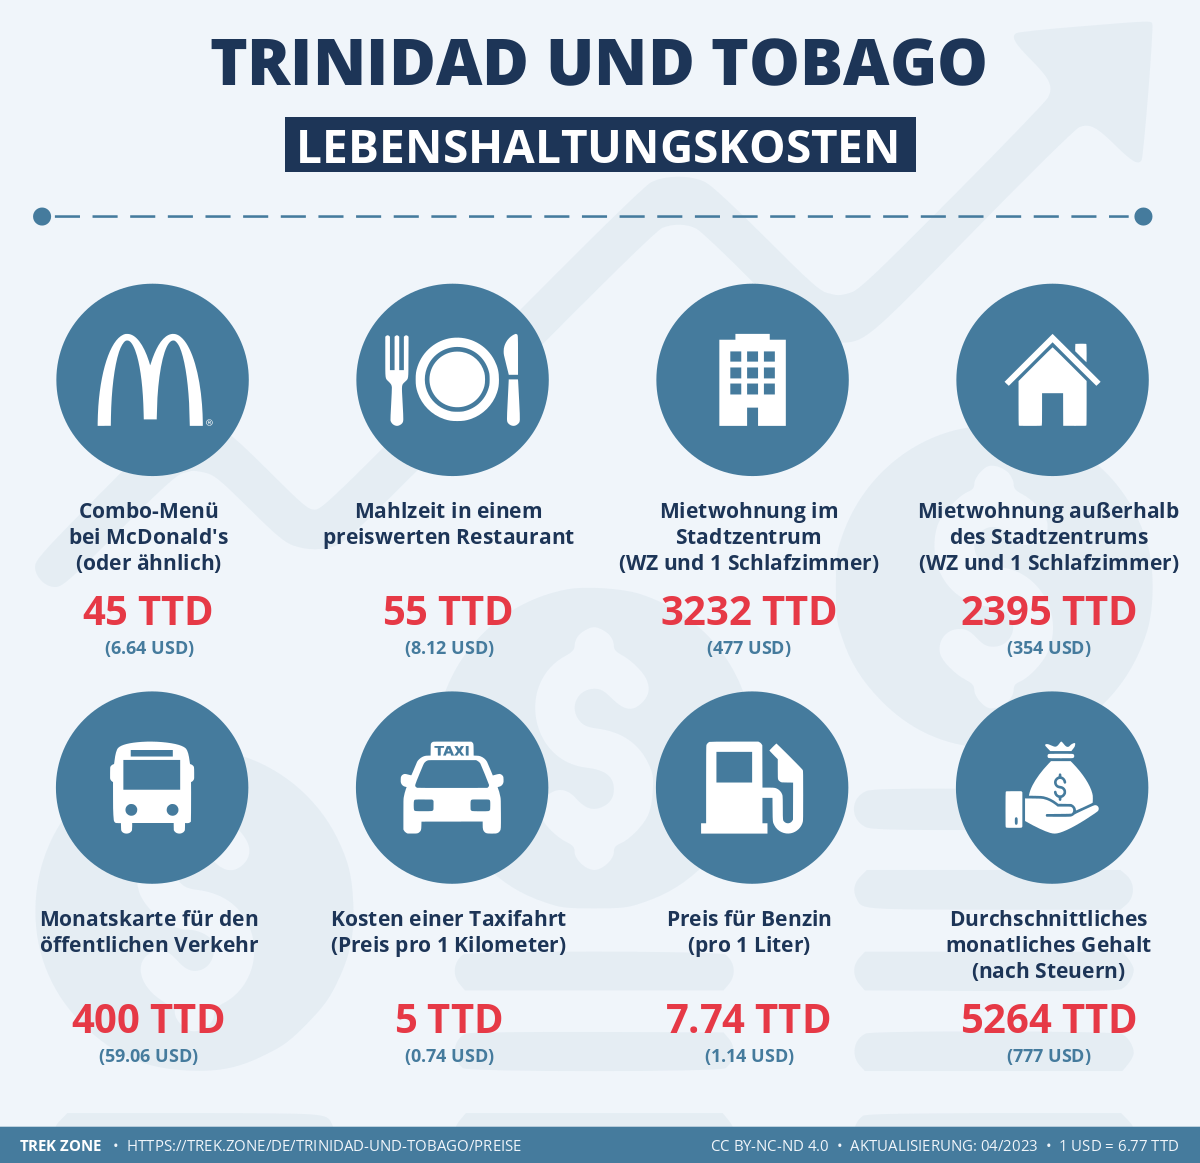 preise und lebenskosten trinidad und tobago